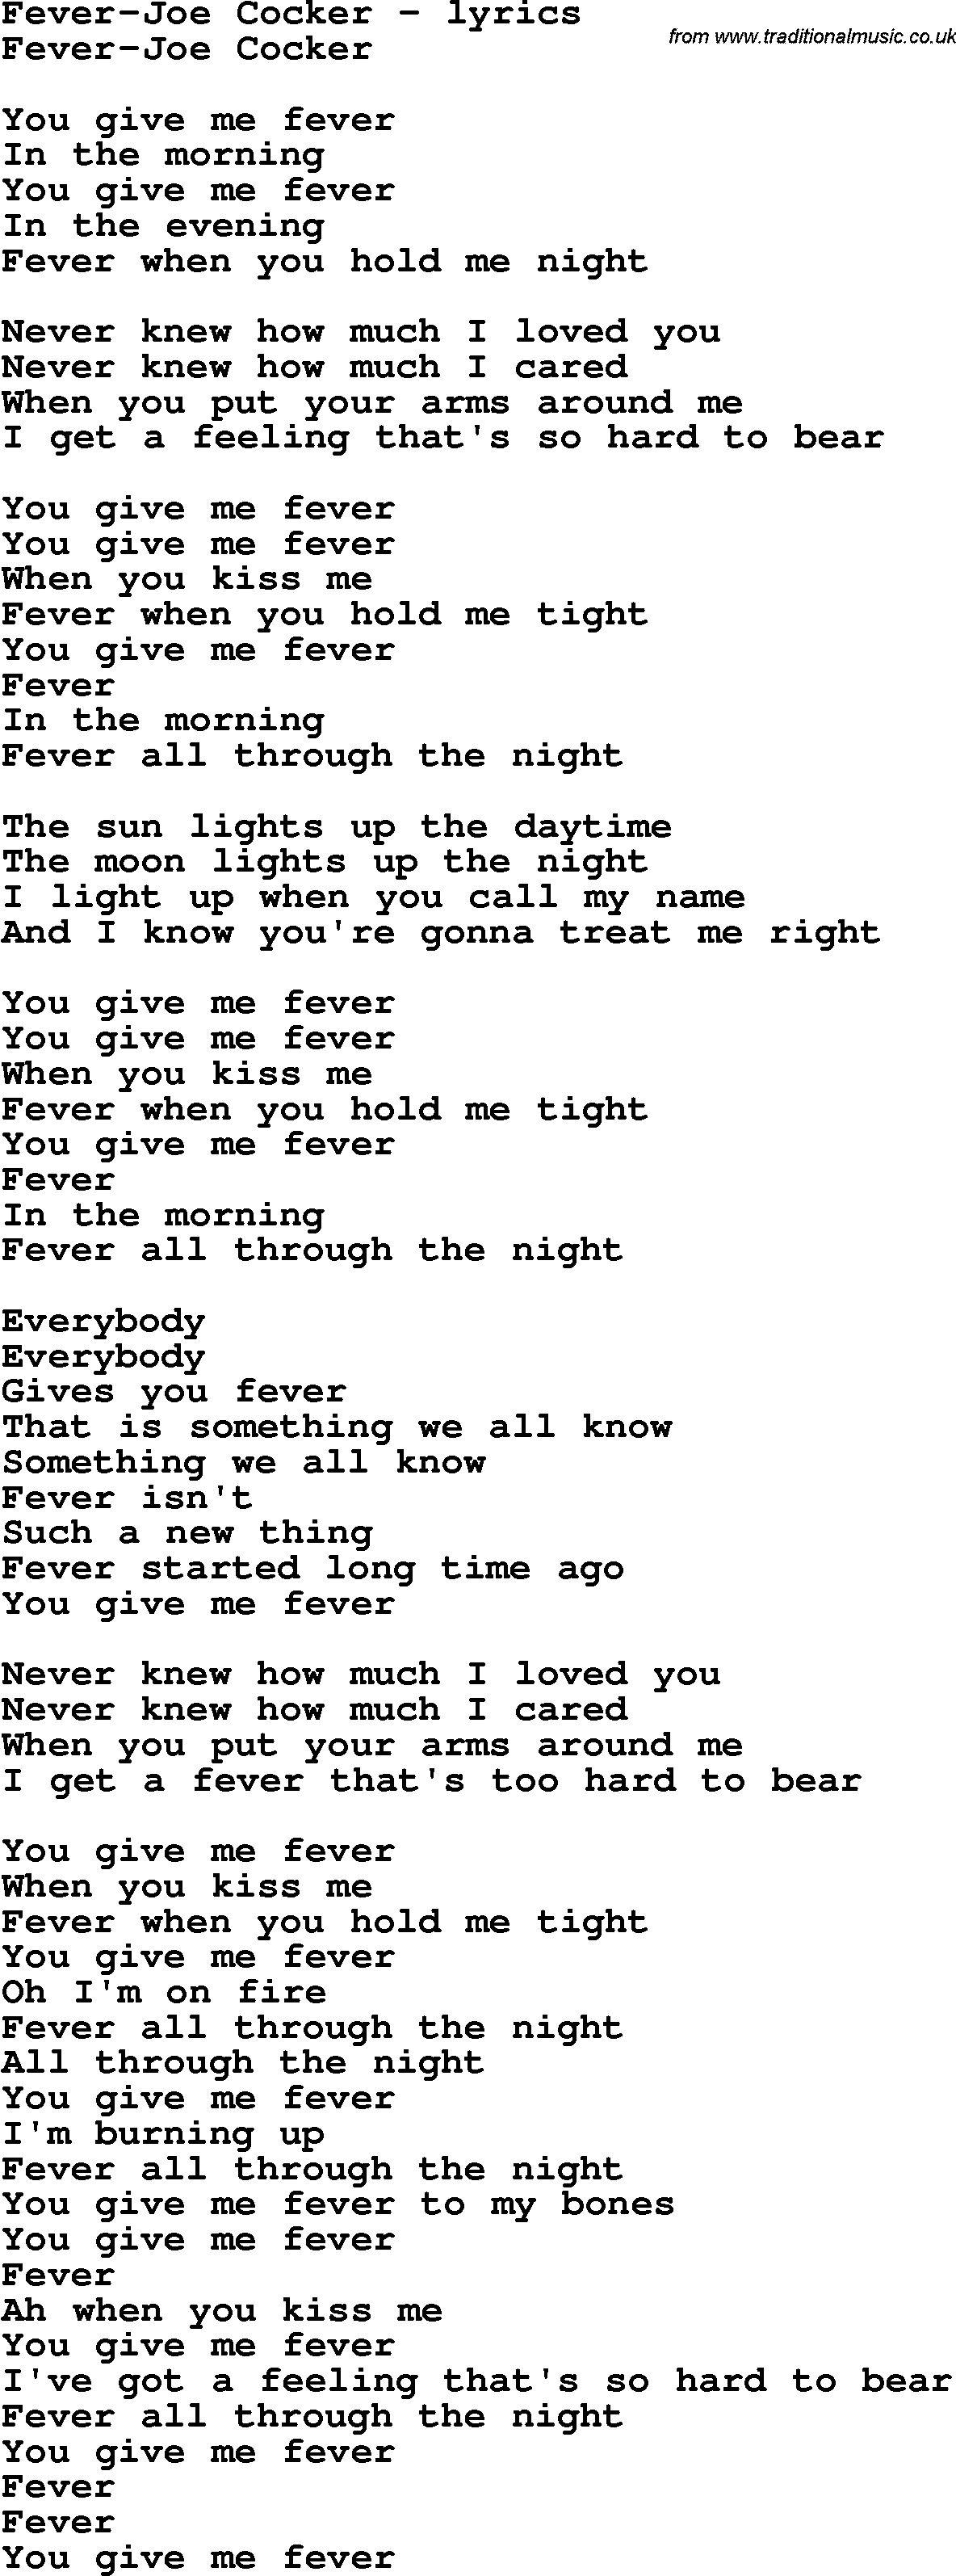 Love Song Lyrics for: Fever-Joe Cocker